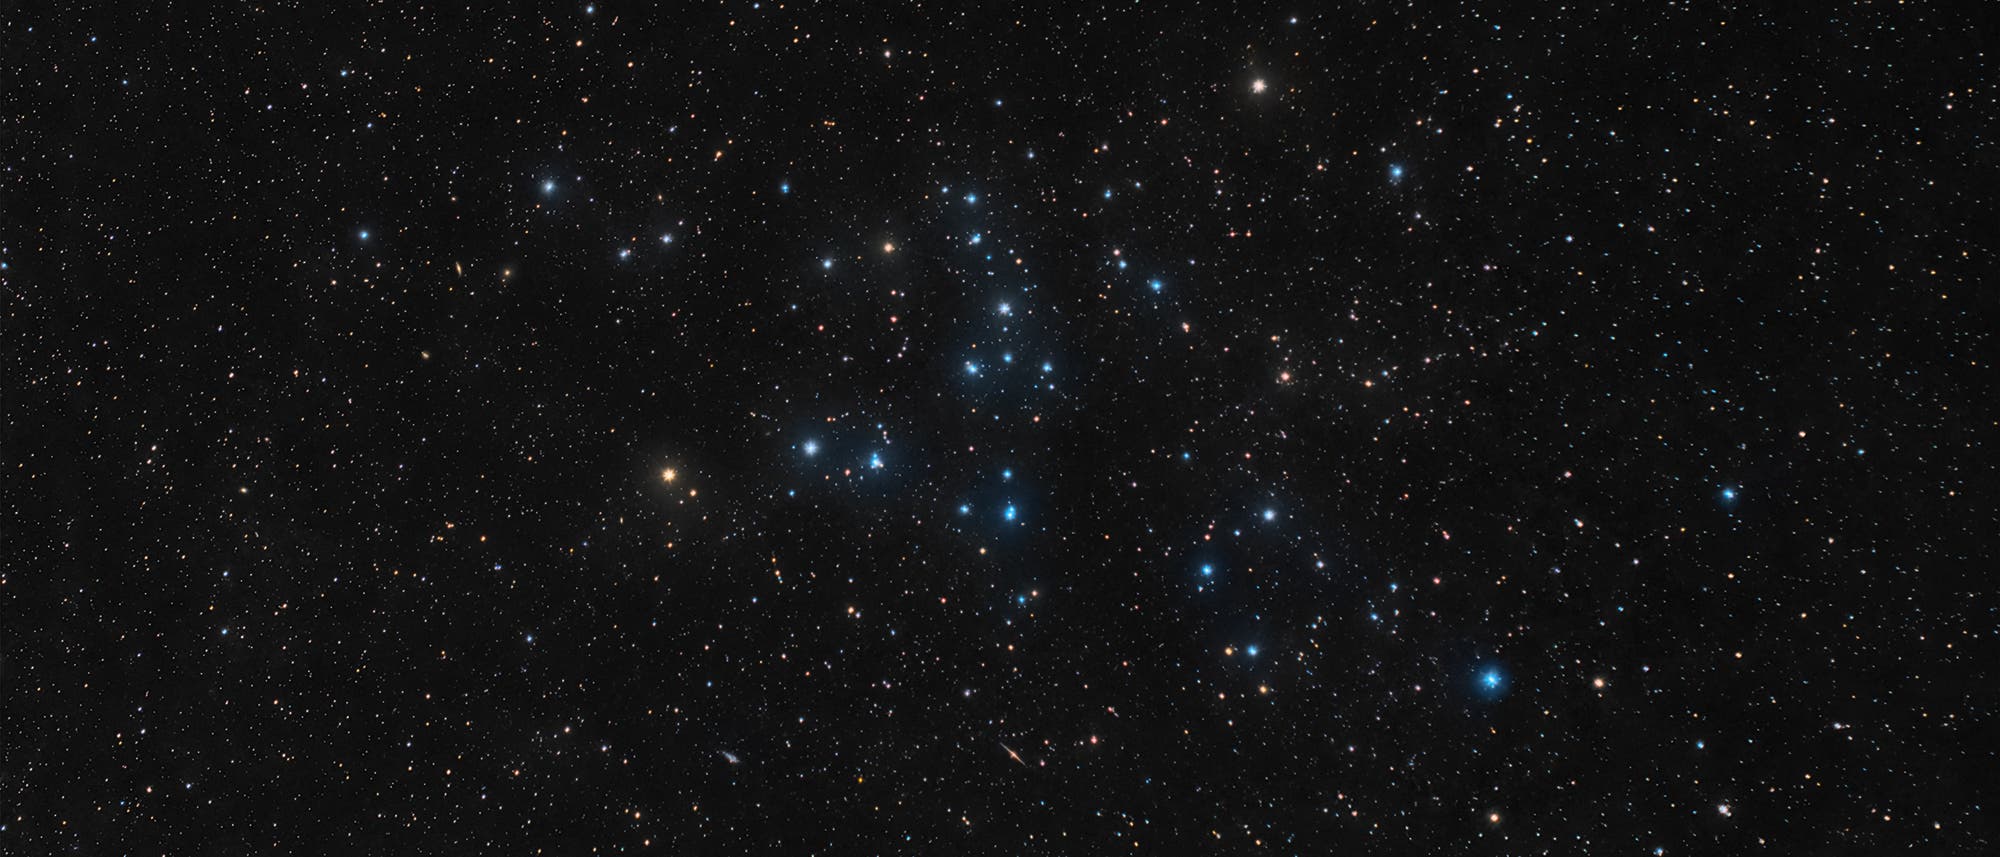 Der offene Sternhaufen Melotte 111 im Sternbild Haar der Berenike